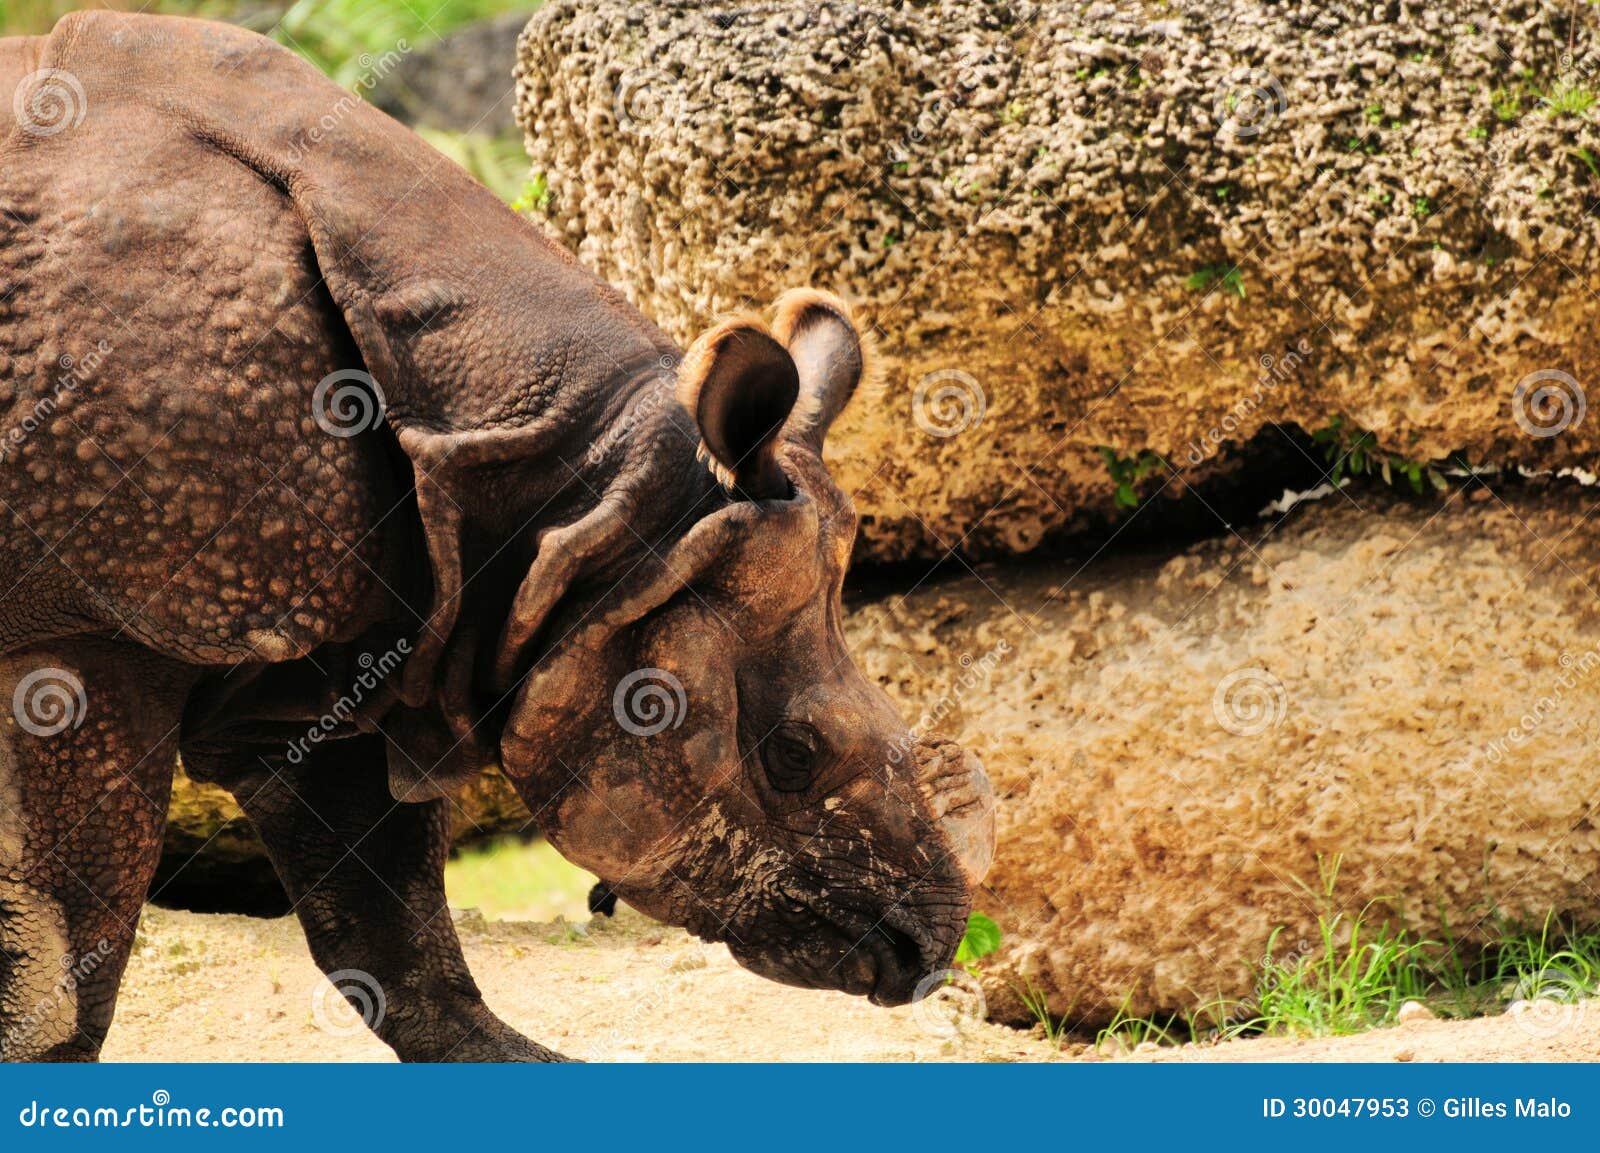 Гулять индийского носорога. Индийский носорог в зверинце Флориды юга. Индийские rhinos одно из самых больших живущих млекопитающих земли в мире.